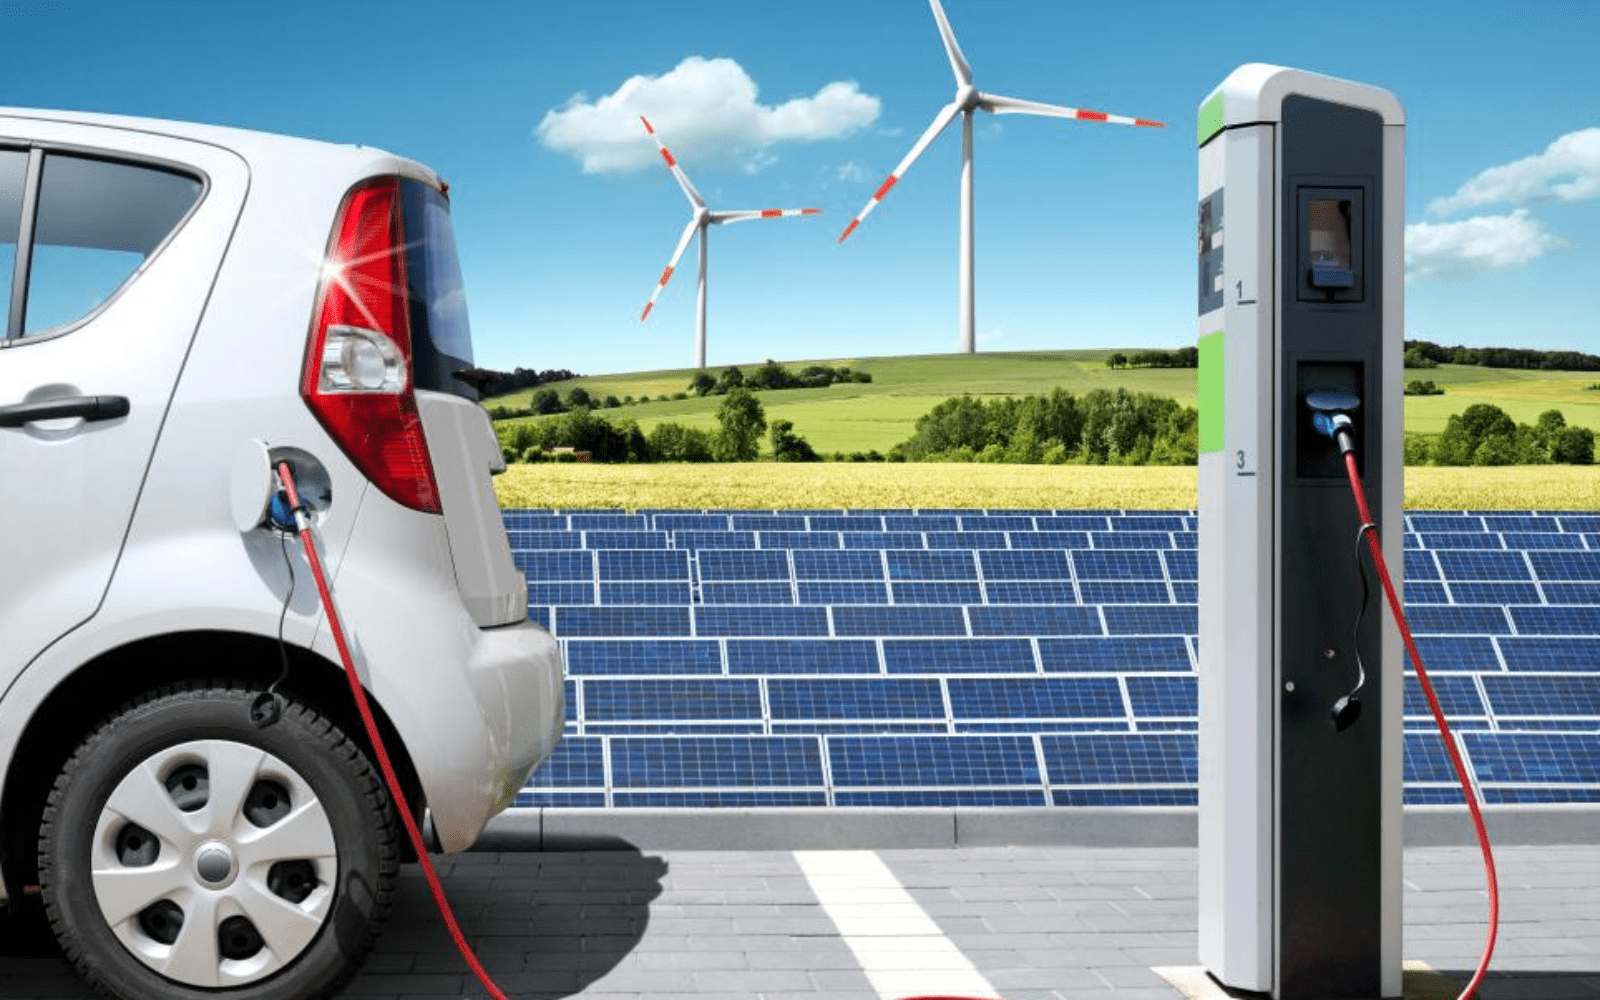 Stanice za punjenje električnih vozila su ključ za ubrzanje e-mobilnosti